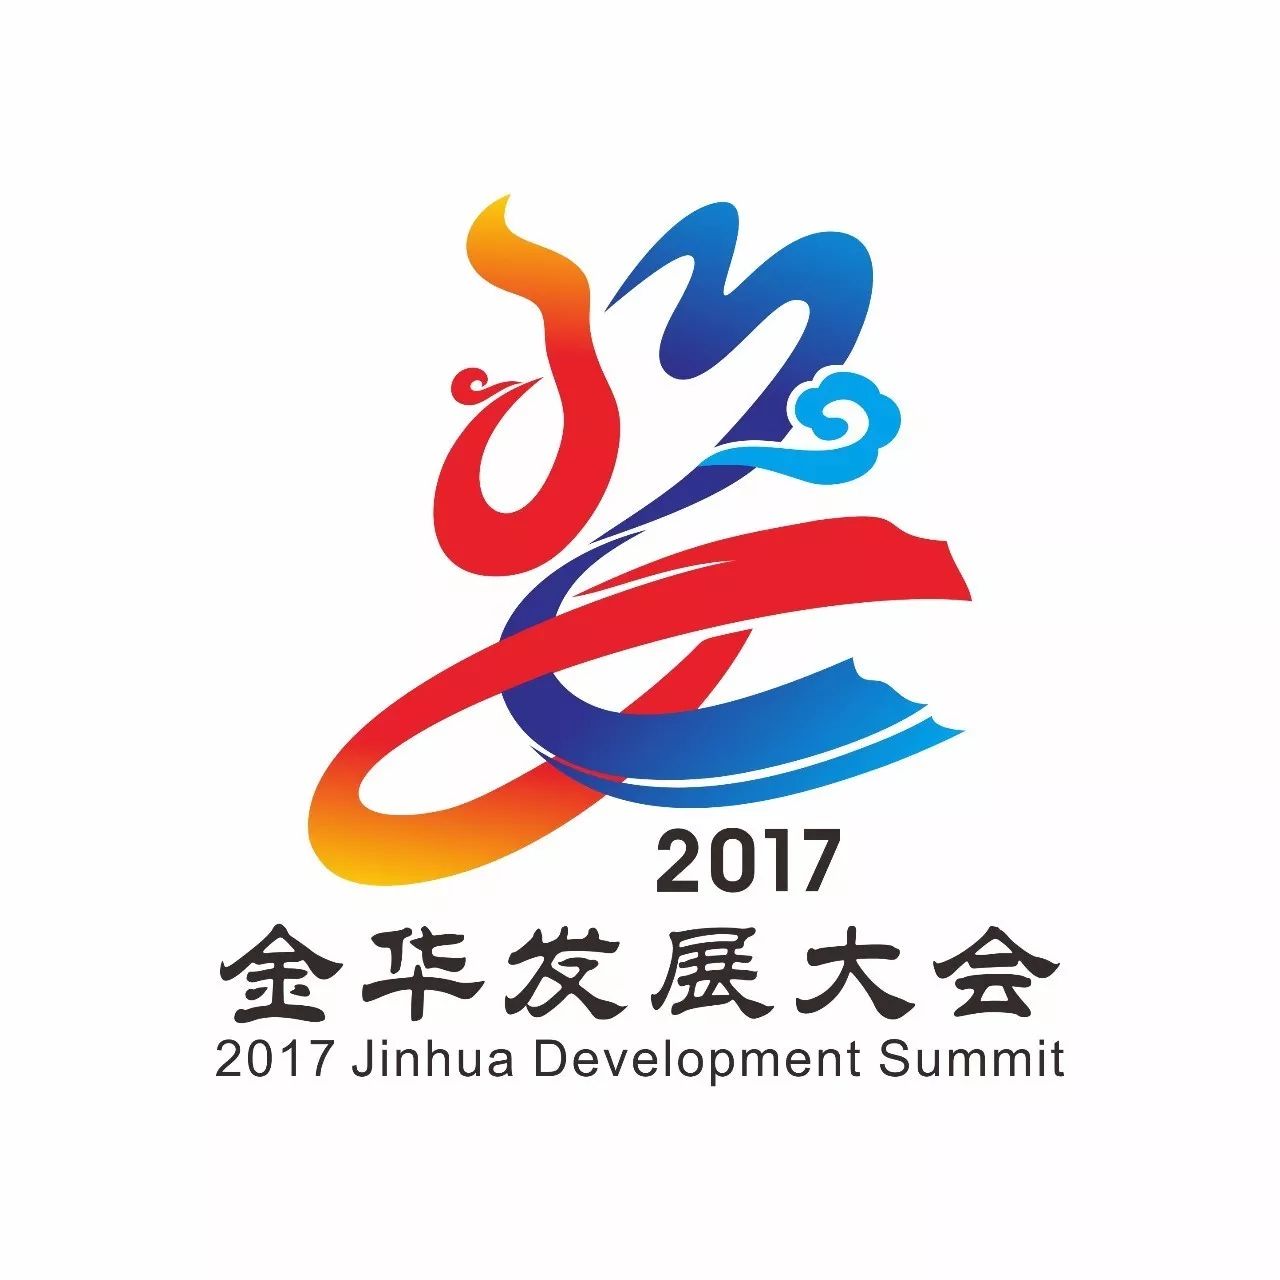 我从未见过如此惊艳的婺2017金华发展大会logo正式亮相